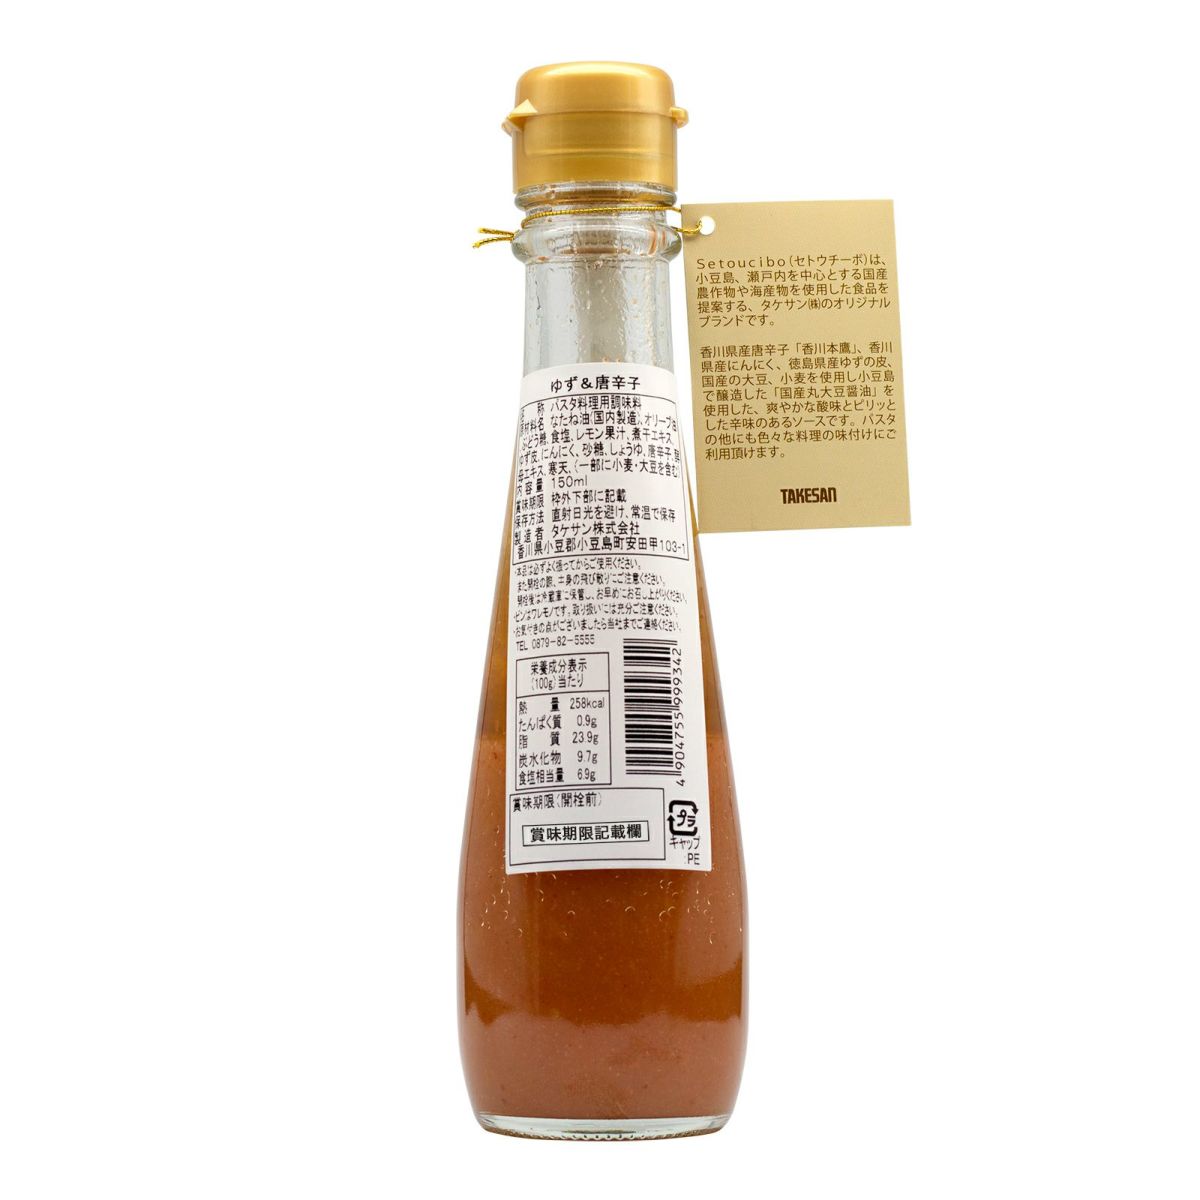 Takesan Setoucibo Yuzu Citrus Spicy Pasta Sauce 150ml